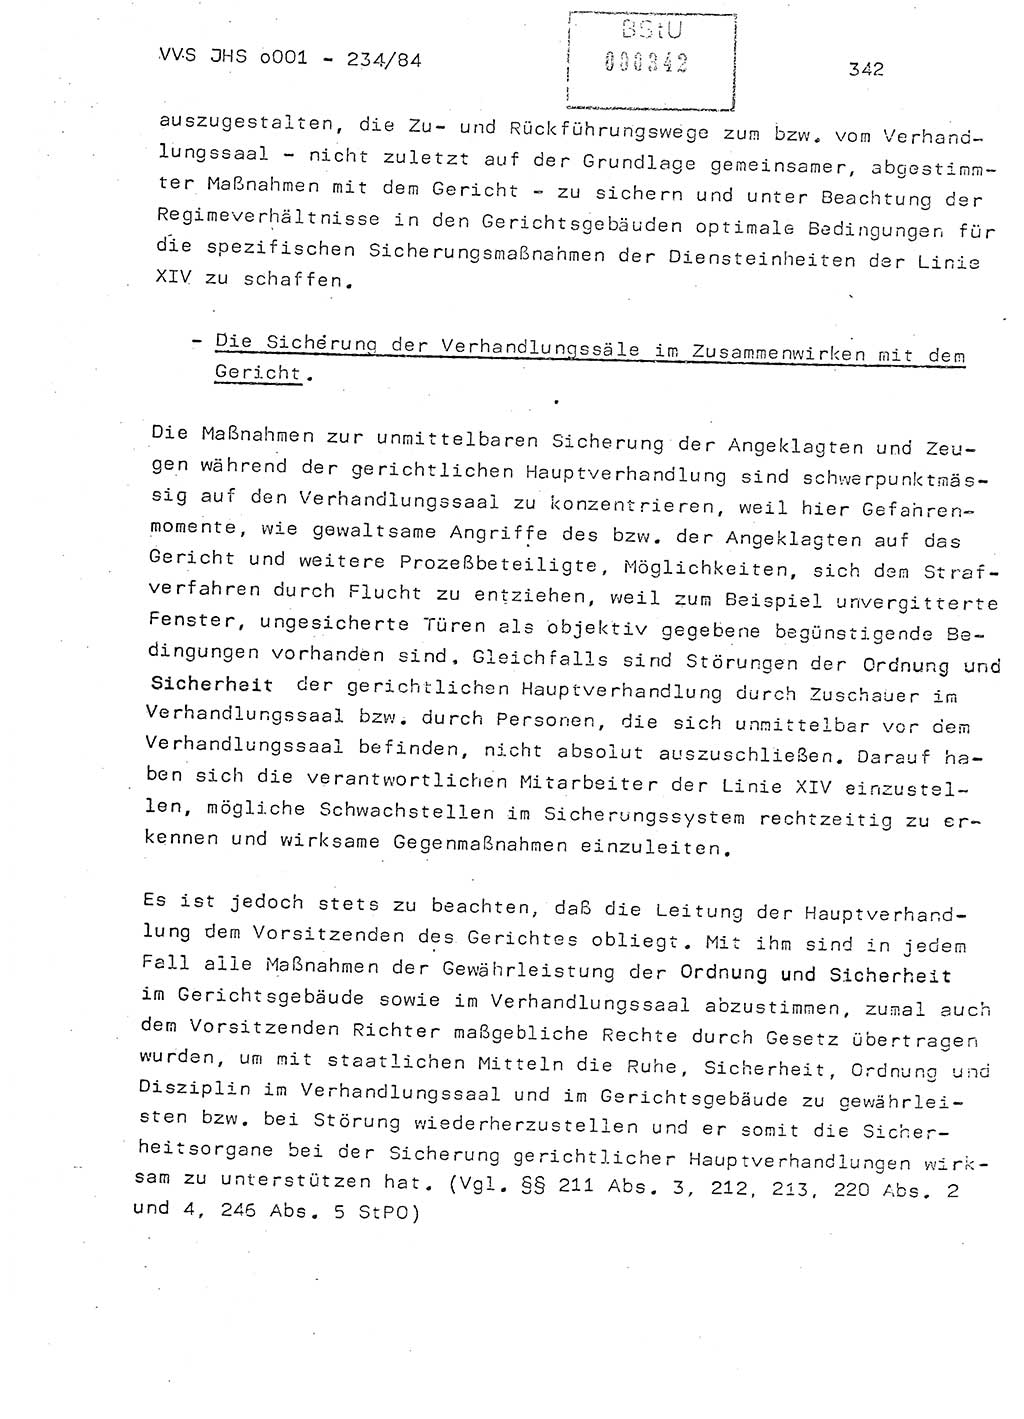 Dissertation Oberst Siegfried Rataizick (Abt. ⅩⅣ), Oberstleutnant Volkmar Heinz (Abt. ⅩⅣ), Oberstleutnant Werner Stein (HA Ⅸ), Hauptmann Heinz Conrad (JHS), Ministerium für Staatssicherheit (MfS) [Deutsche Demokratische Republik (DDR)], Juristische Hochschule (JHS), Vertrauliche Verschlußsache (VVS) o001-234/84, Potsdam 1984, Seite 342 (Diss. MfS DDR JHS VVS o001-234/84 1984, S. 342)